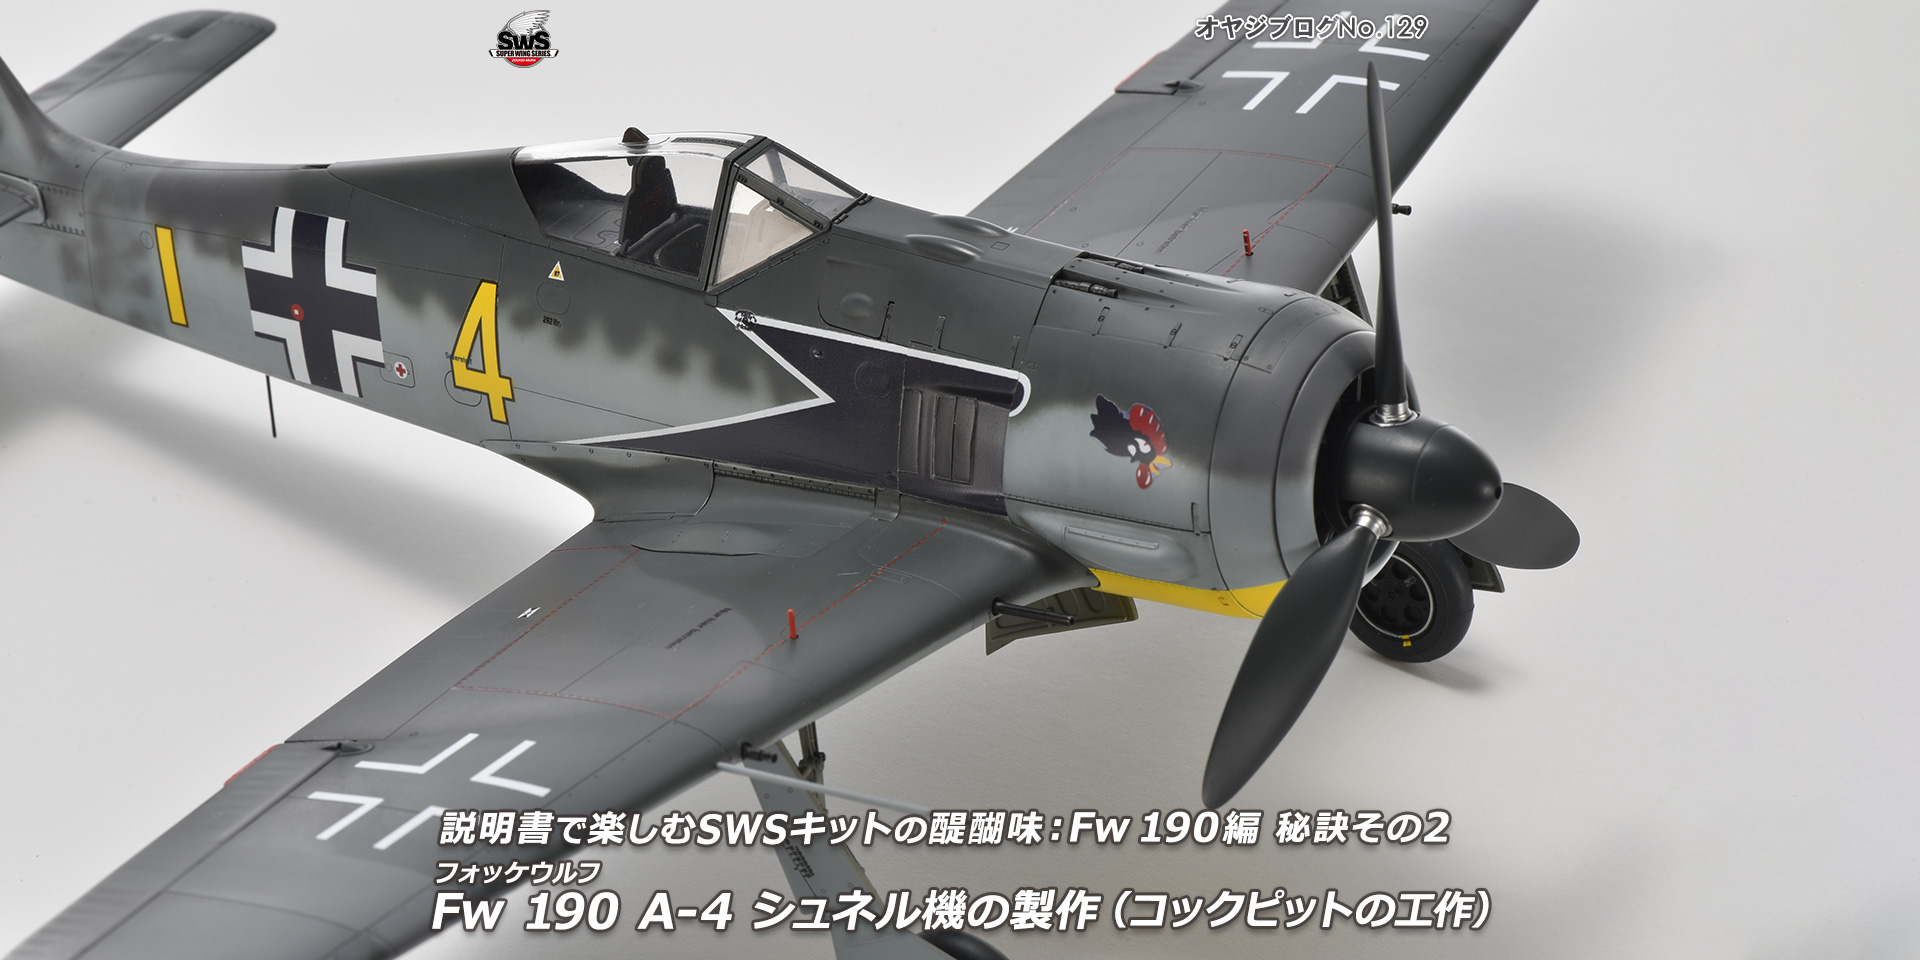 オヤジブログNo.129 - 説明書で楽しむSWSキットの醍醐味： Fw 190編 秘訣その2　フォッケウルフ Fw 190 A-4 シュネル機の製作（コックピットの工作）